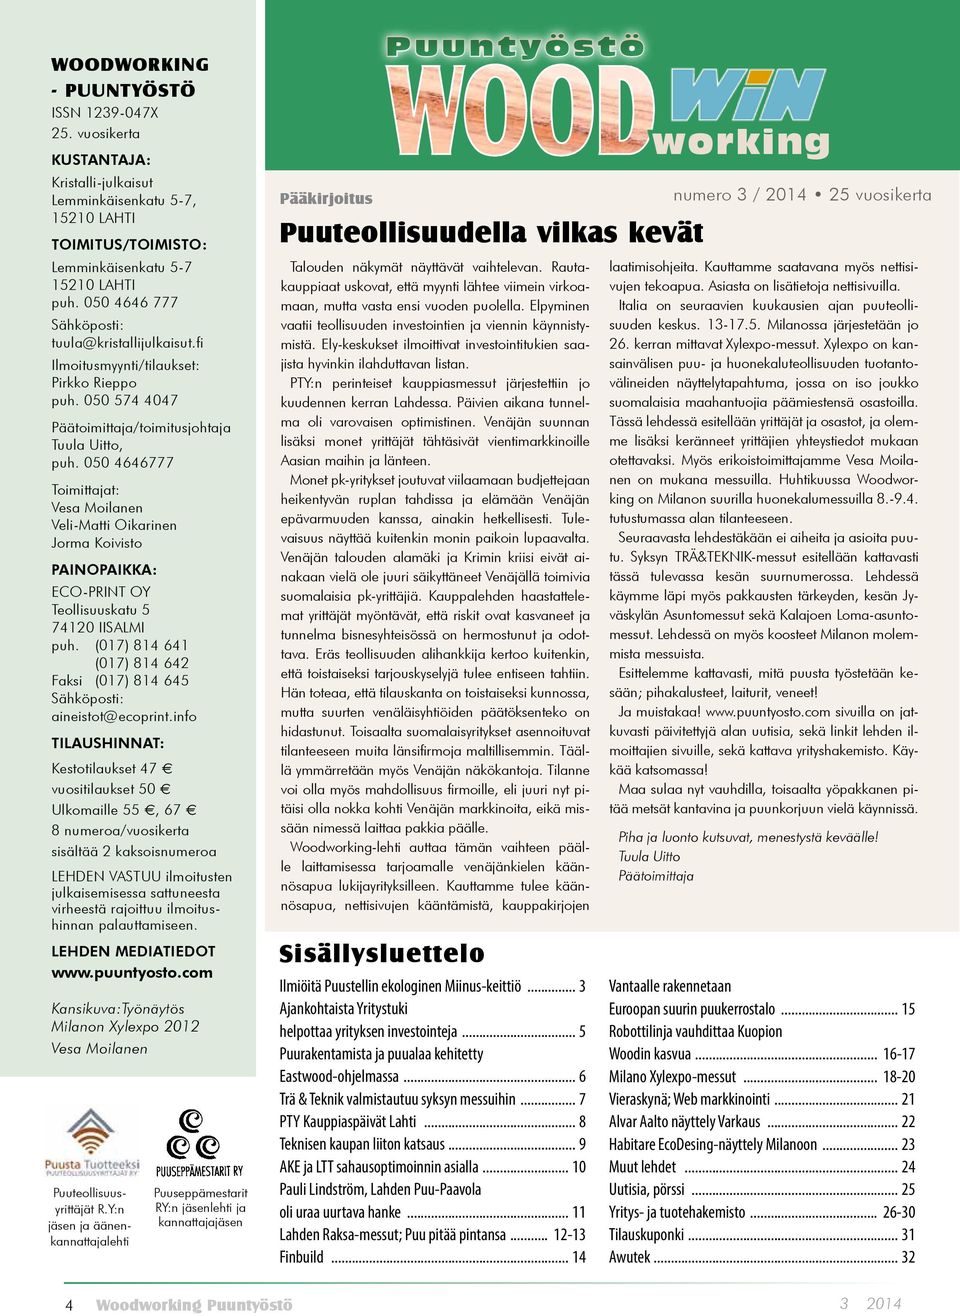 050 4646777 Toimittajat: Vesa Moilanen Veli-Matti Oikarinen Jorma Koivisto PAINOPAIKKA: ECO-PRINT OY Teollisuuskatu 5 74120 IISALMI puh.